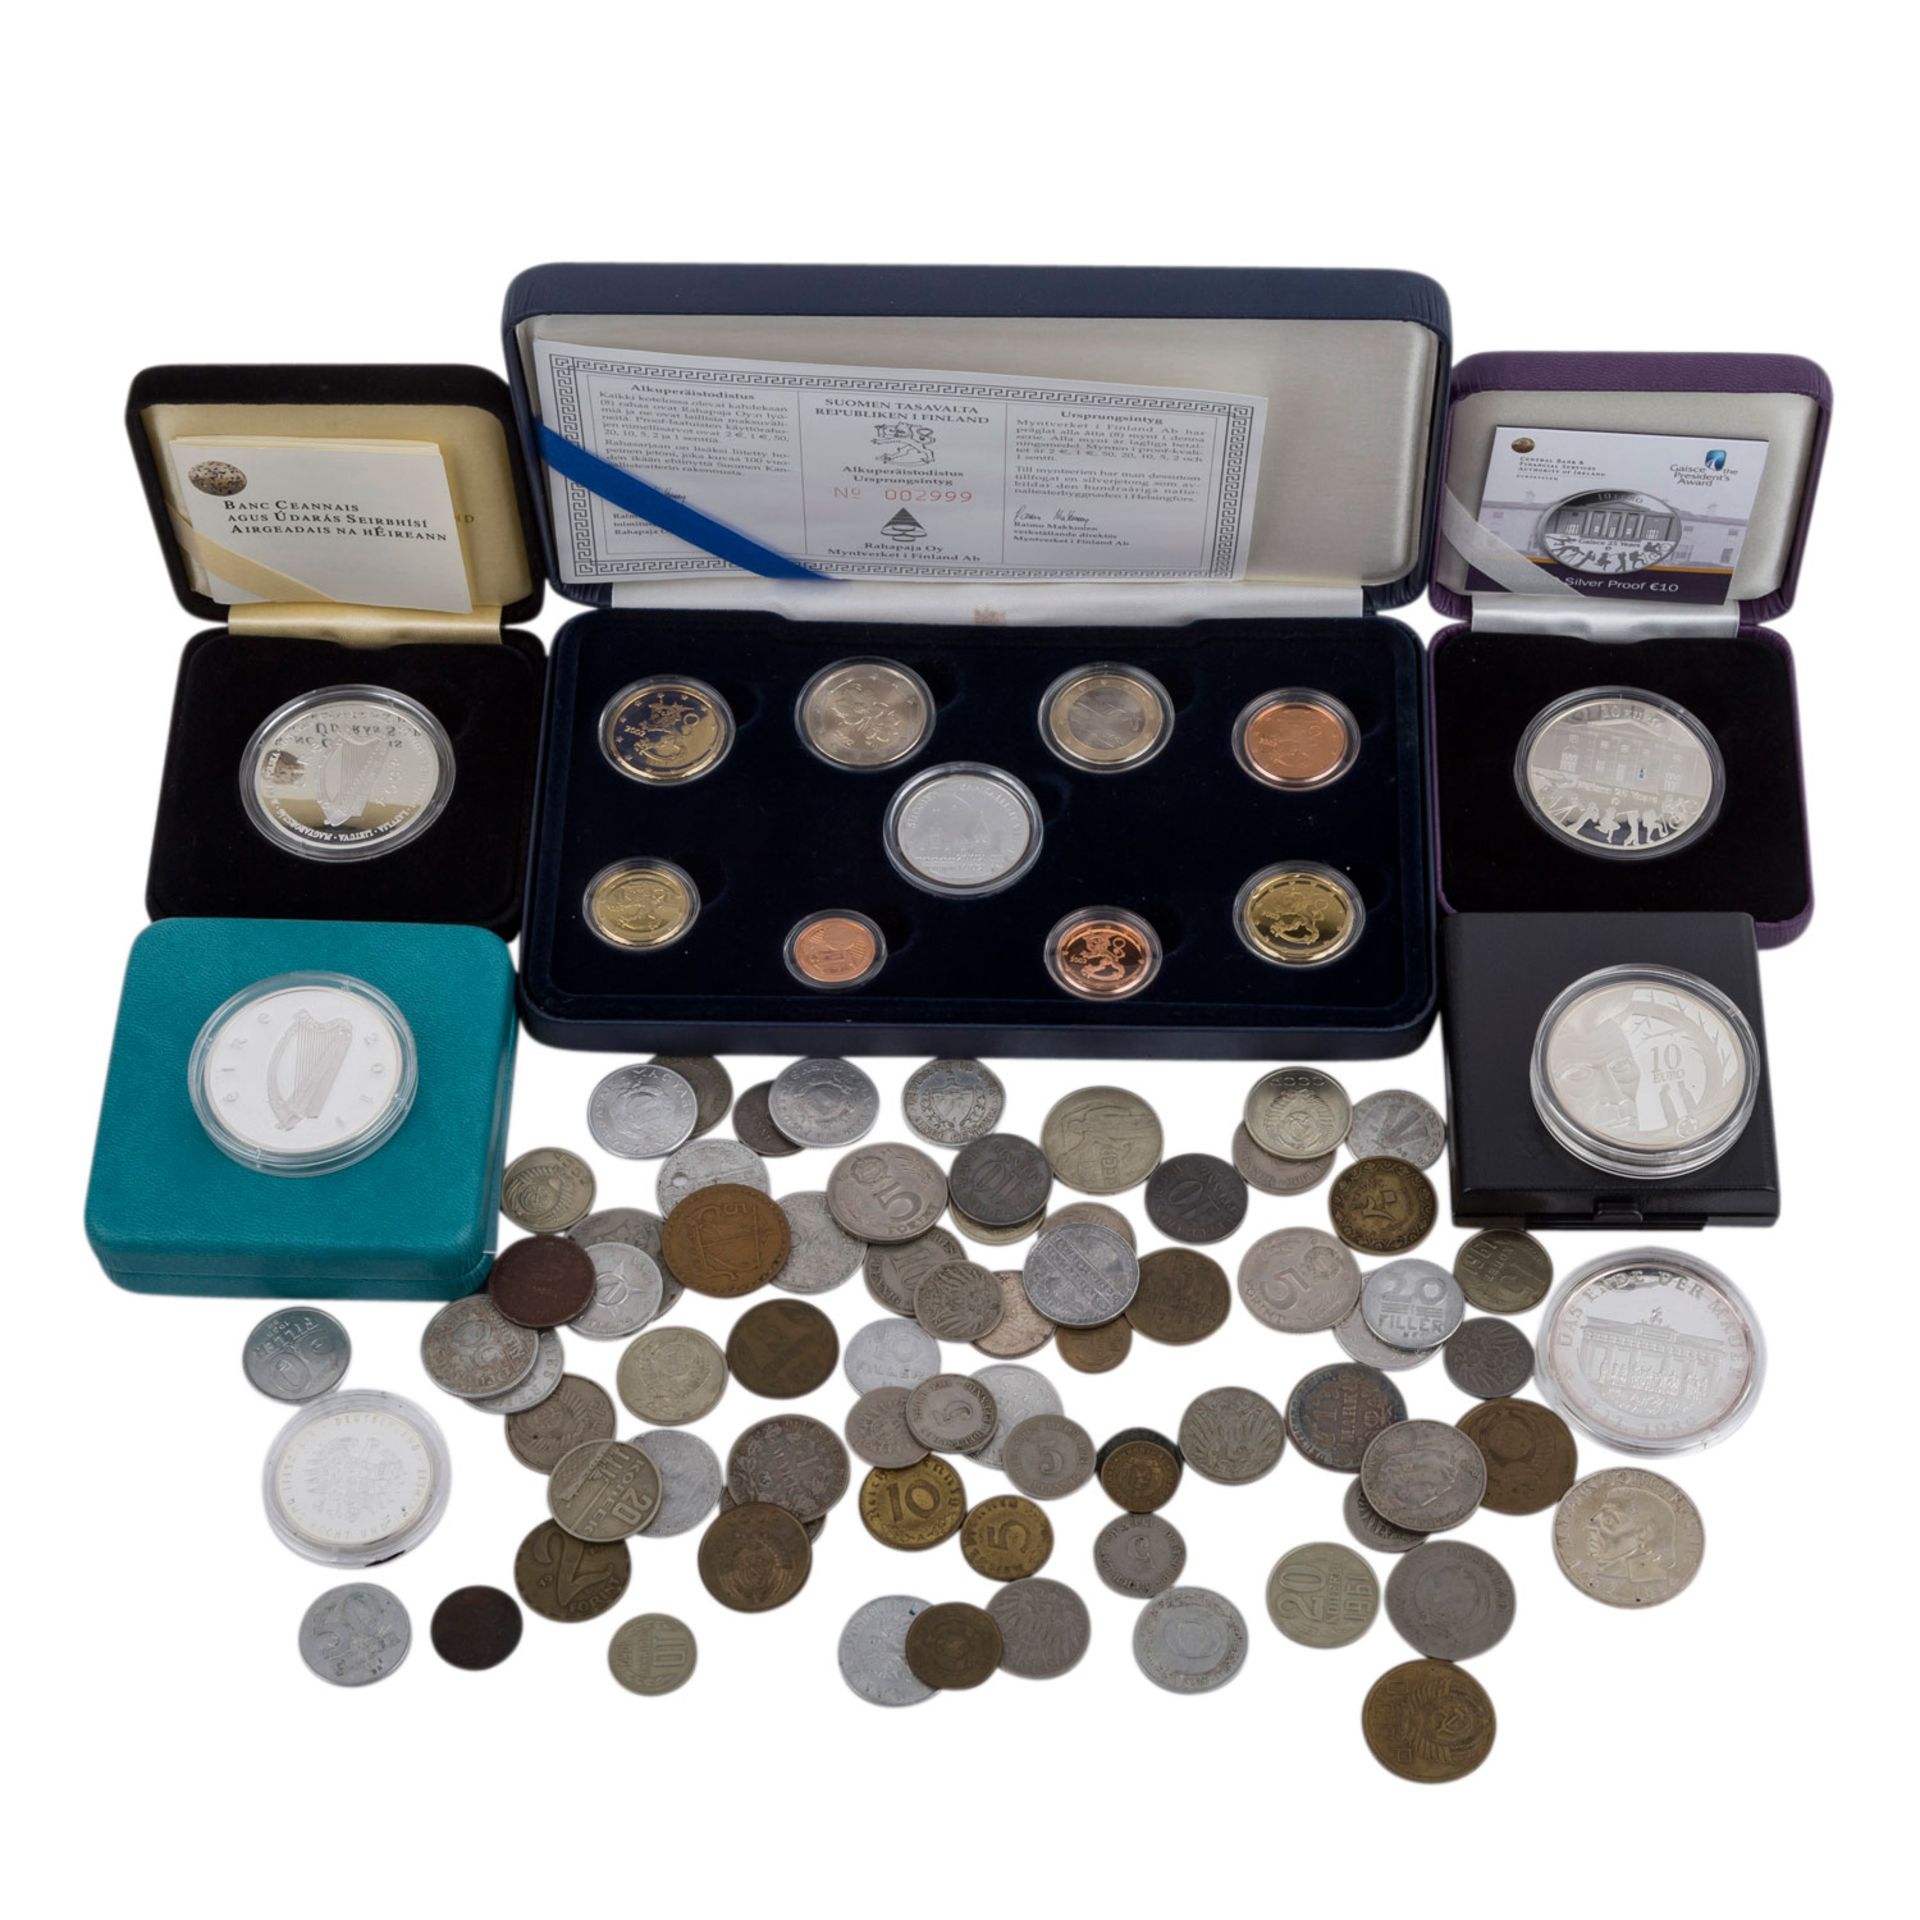 Restelot mit u.a. Prestige Kursmünzensatz Finnland 2002mit Medaille und 1 Cent bis 2 Euro Münzen,